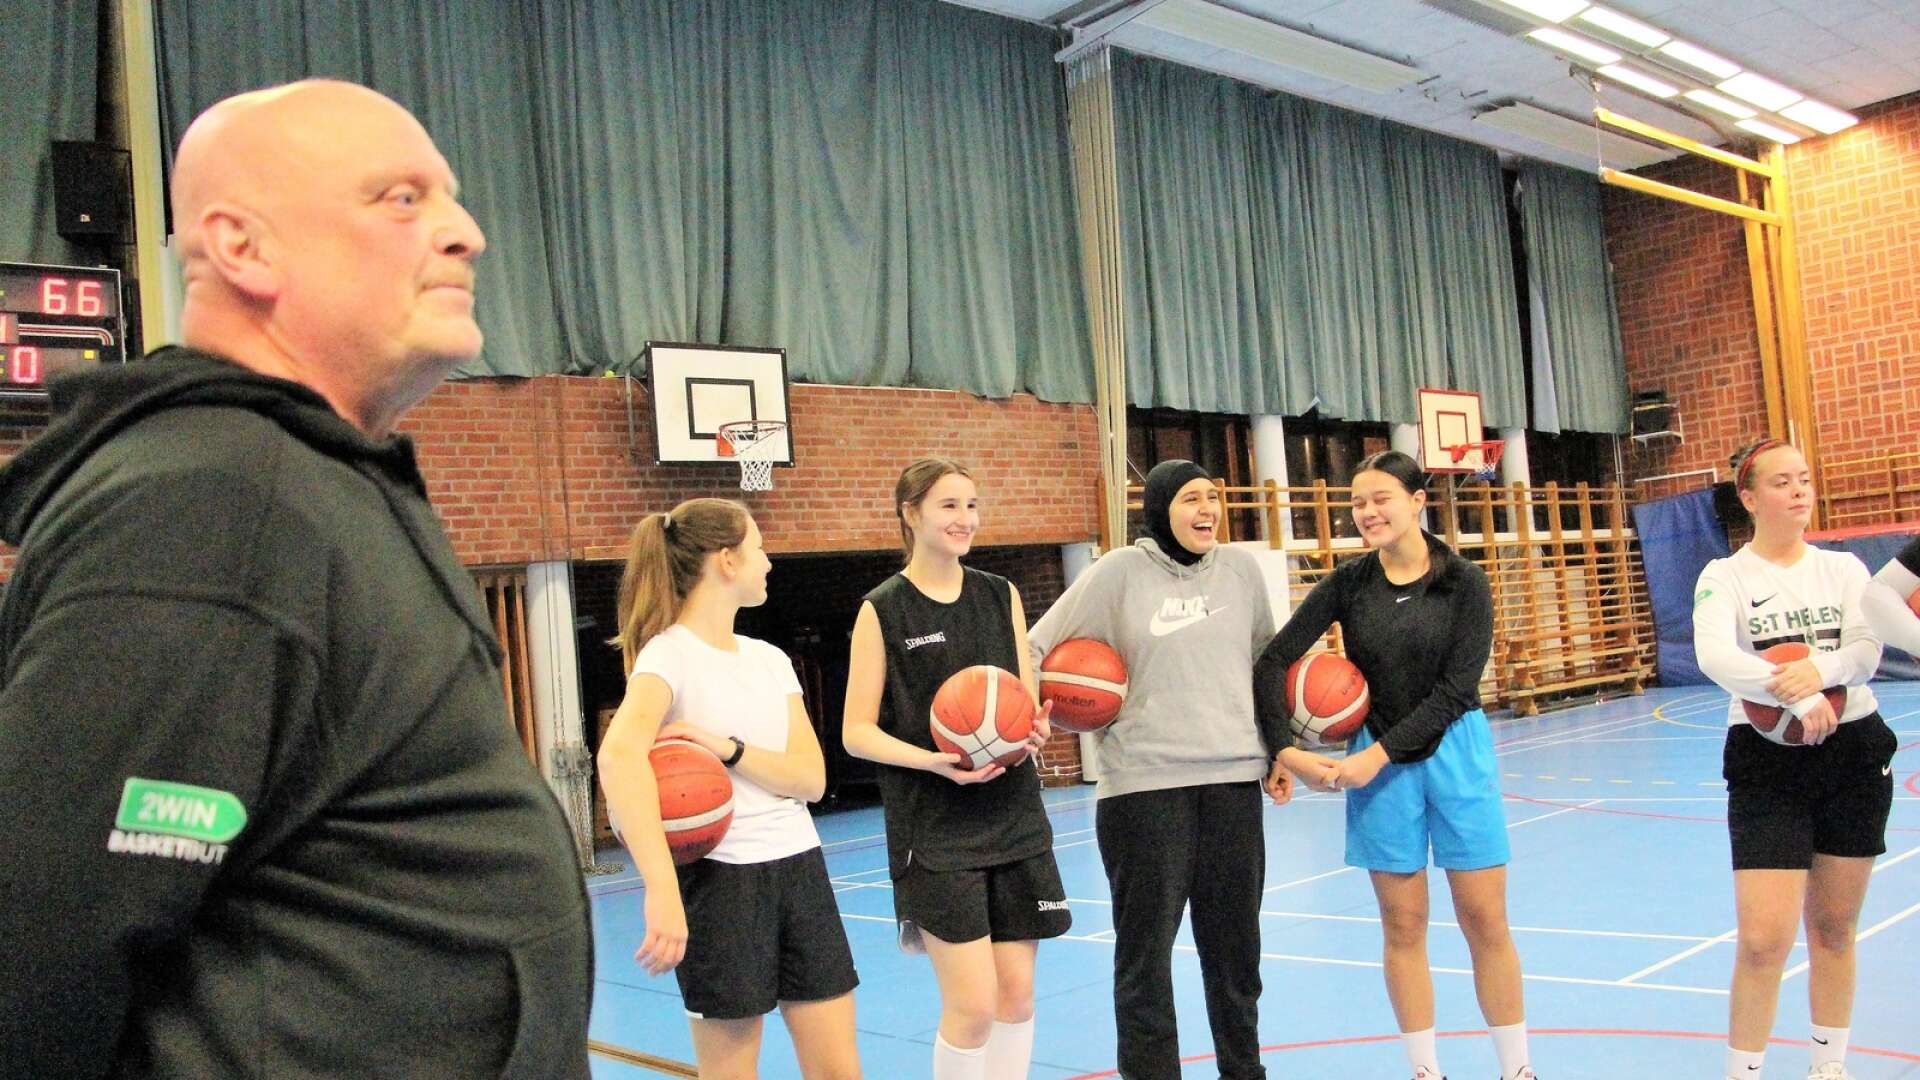 Thomas Hellkvist är mångårig tränare och ledare hos S:ta Helena Basket. Han beskriver förra säsongen som kaotisk, men säger att han ser ett ökat basketintresse hos unga tjejer igen.